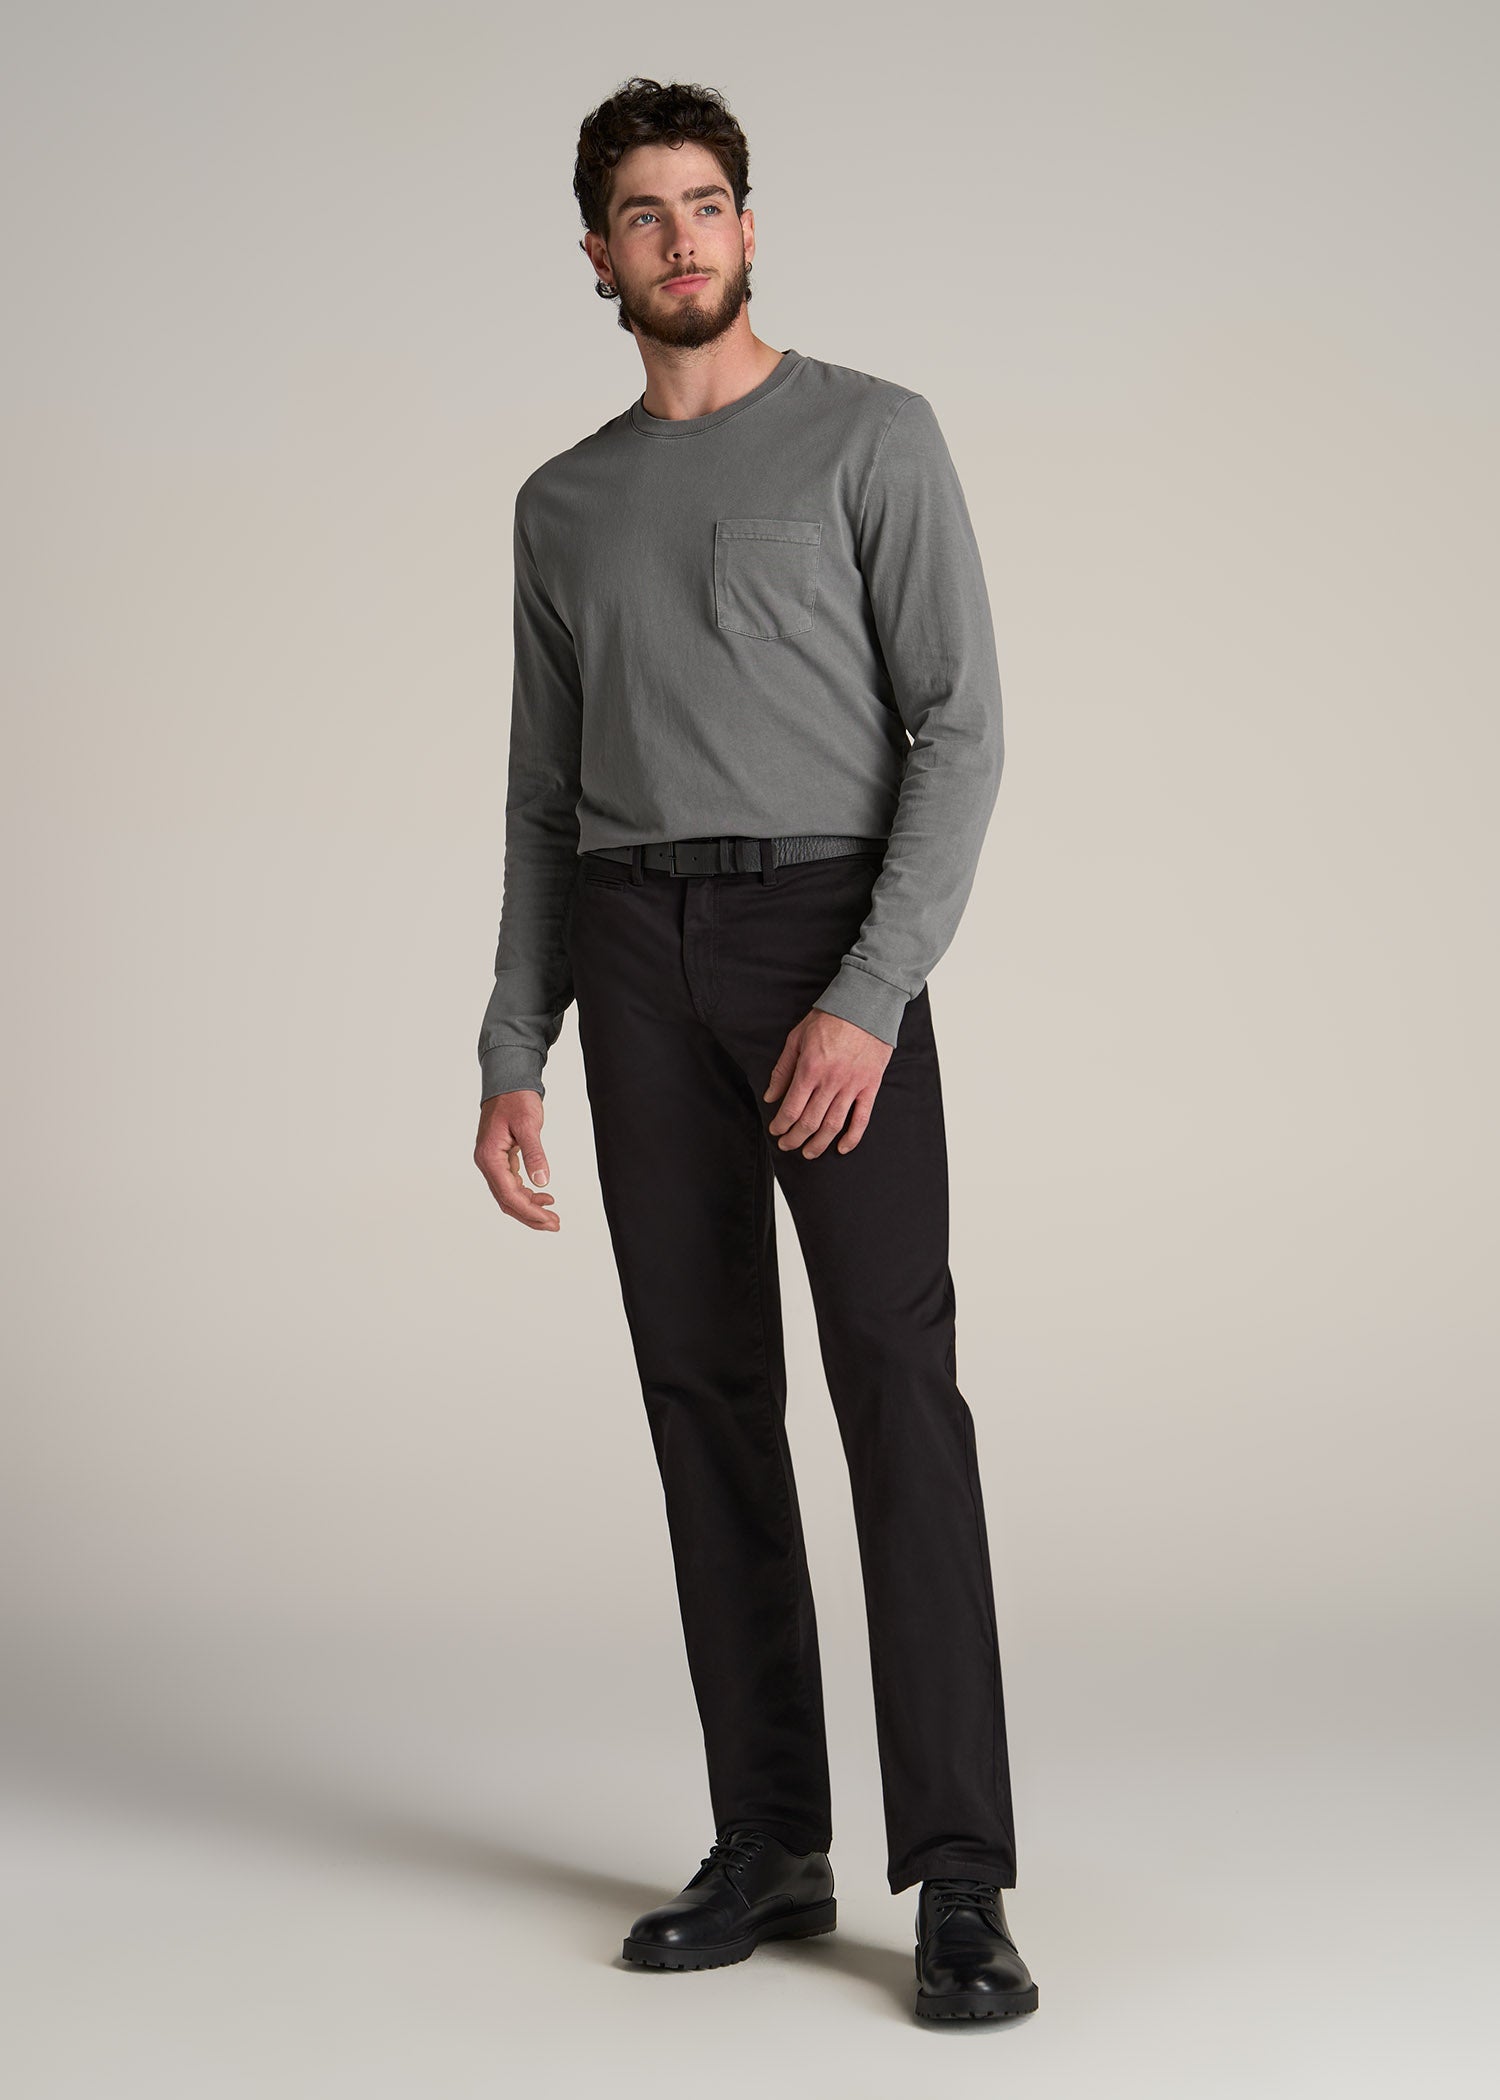 J1 STRAIGHT Leg Five-Pocket Pants for Tall Men in Black